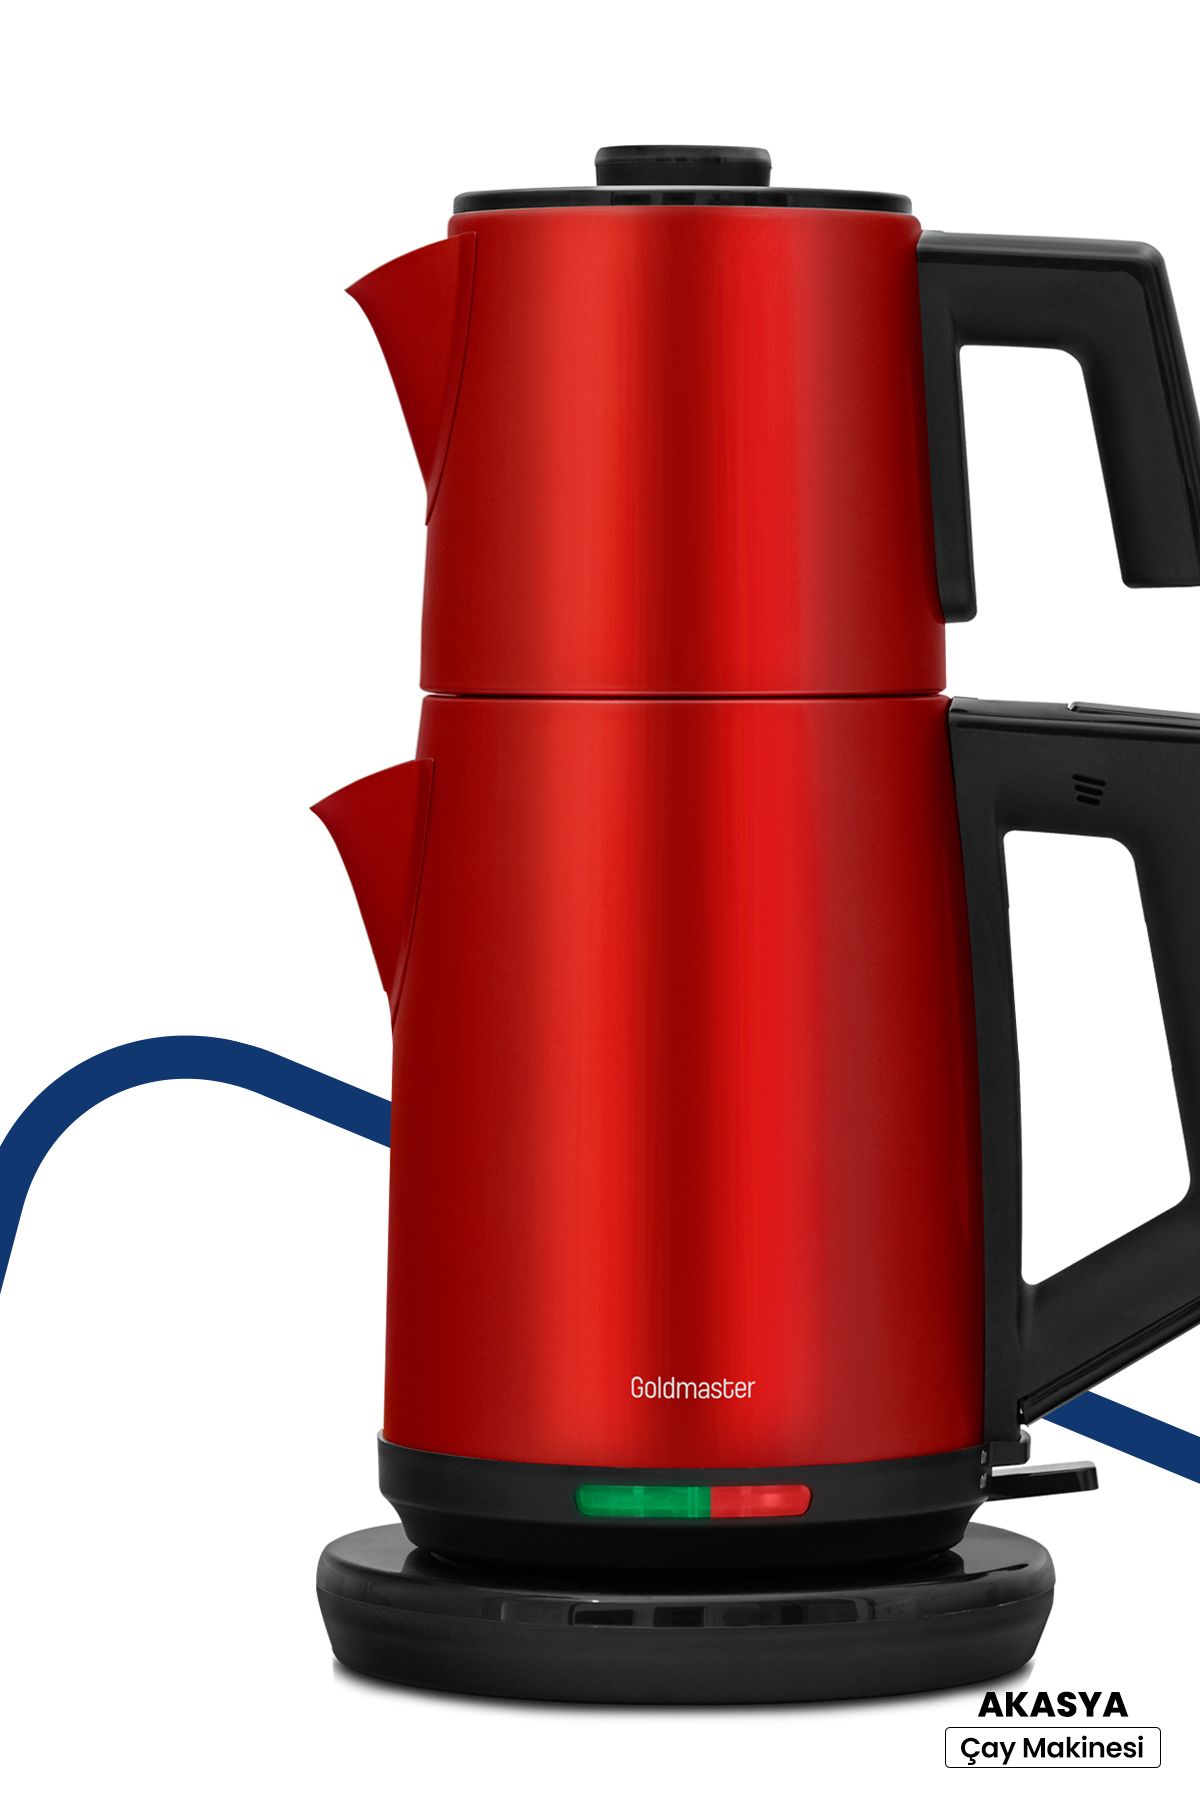 GoldMaster Akasya Kırmızı Xl 2200 Watt Patentli Damlatmayan Tasarımı Çelik Çay Makinesi Ve Su Isıtıcısı